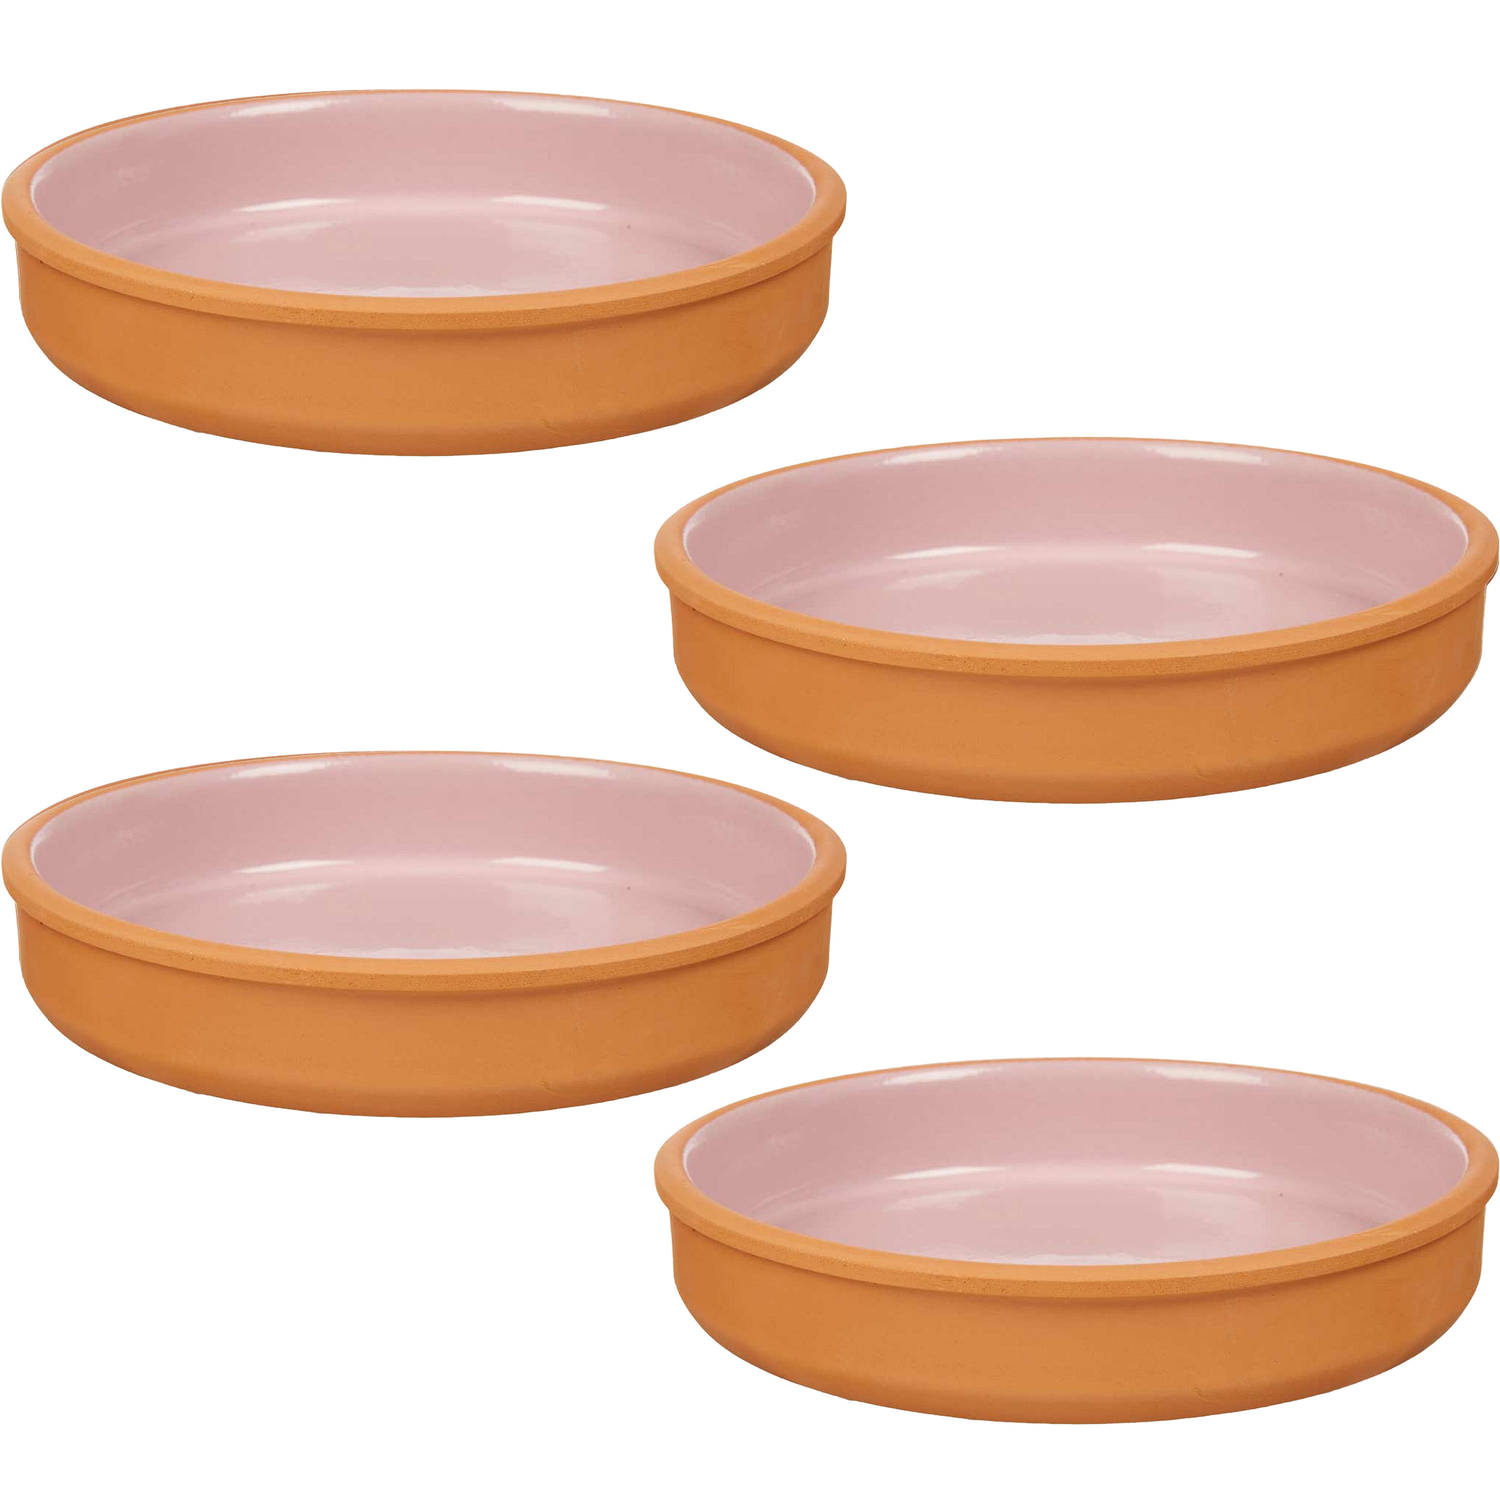 4x stuks tapas-hapjes serveren-oven schaal terracotta-roze 23 x 4 cm Snack en tapasschalen